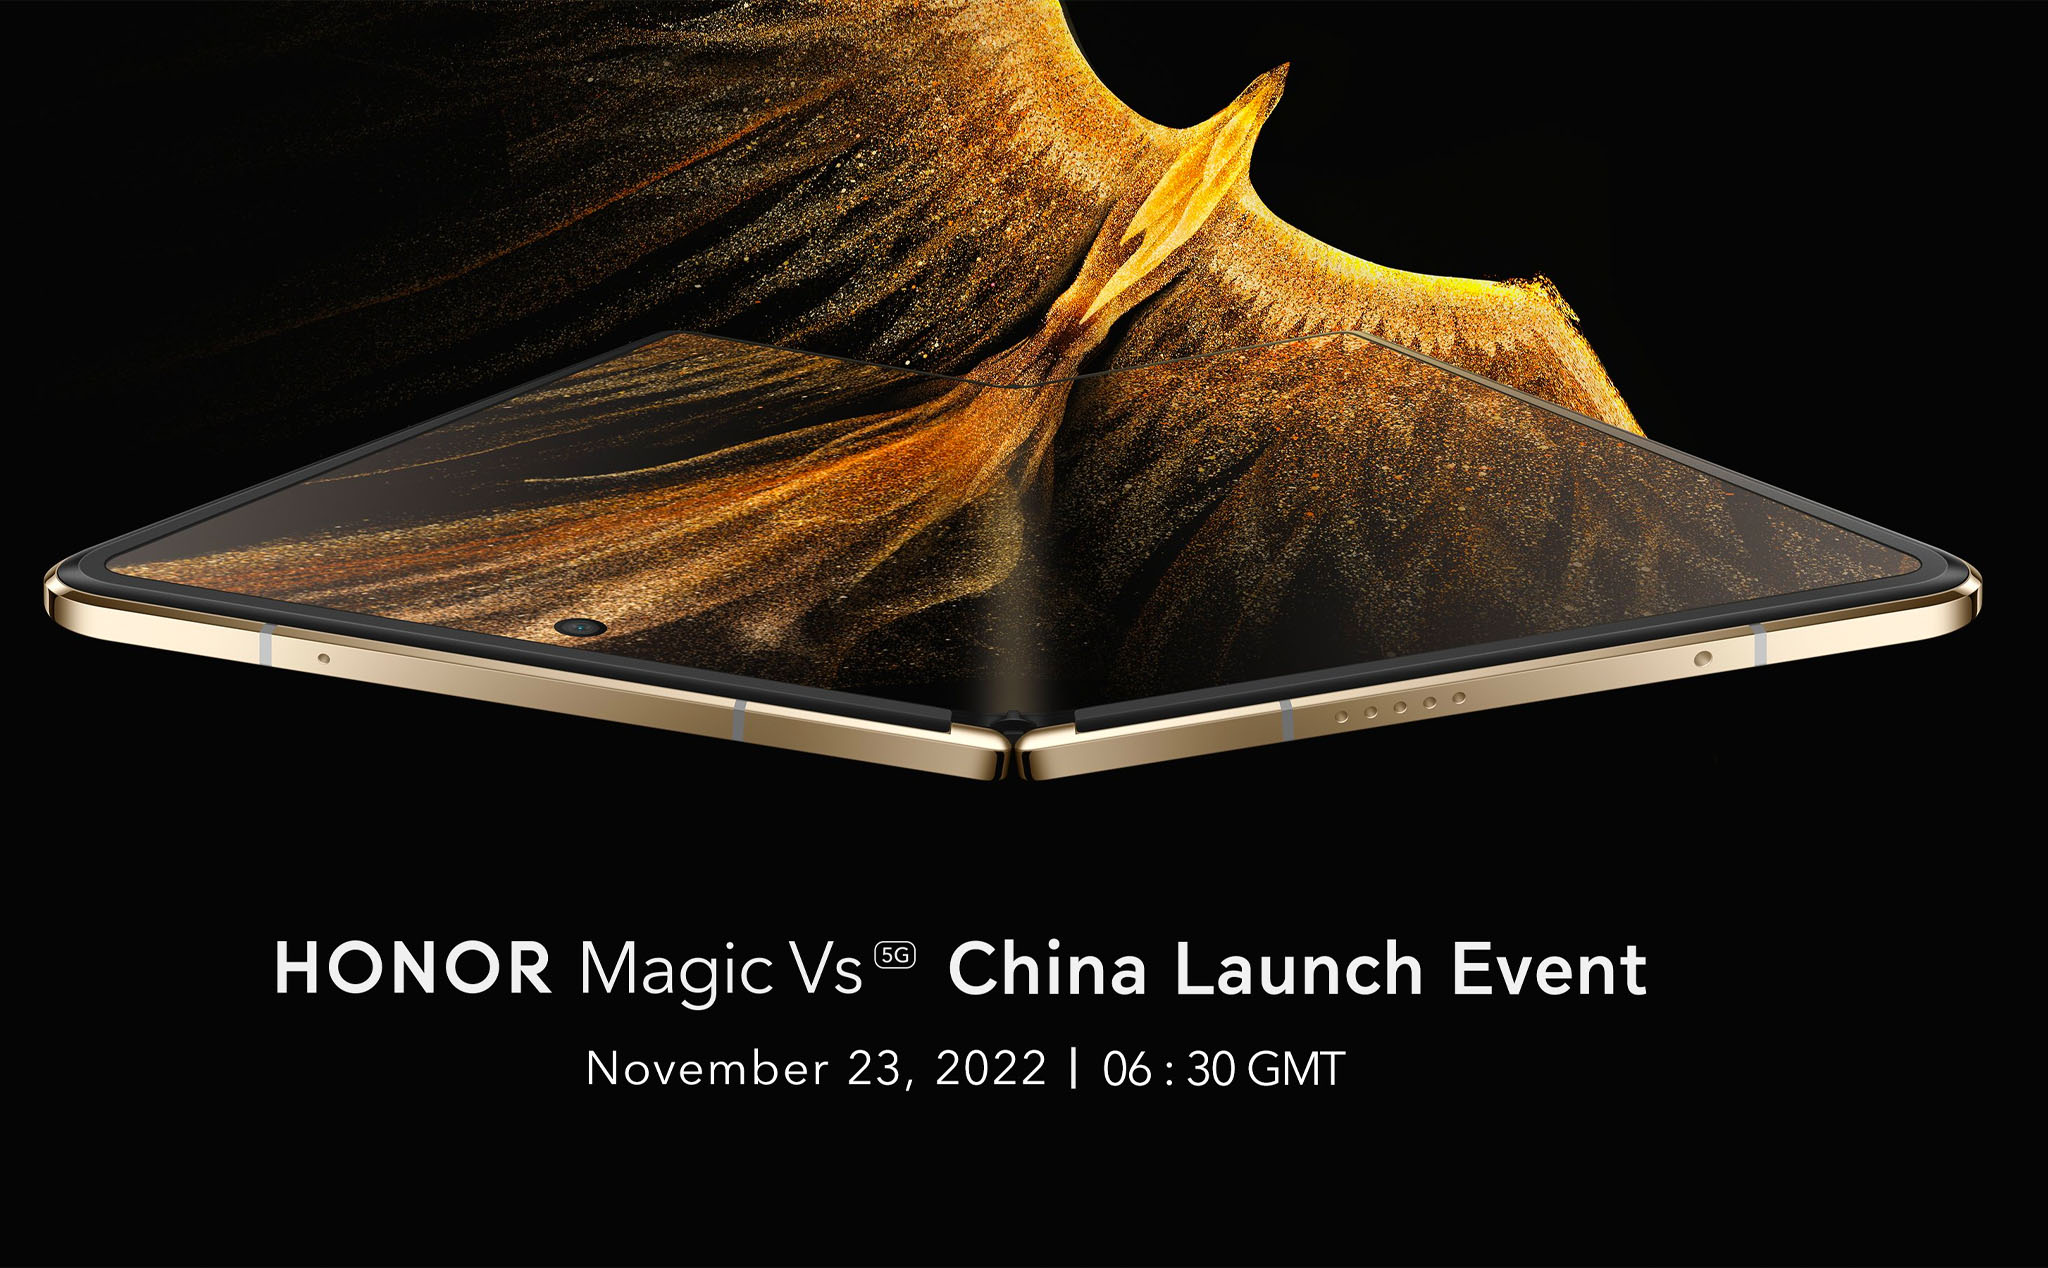 Mẫu smartphone gập HONOR Magic Vs được xác nhận sẽ ra mắt vào ngày 23/11